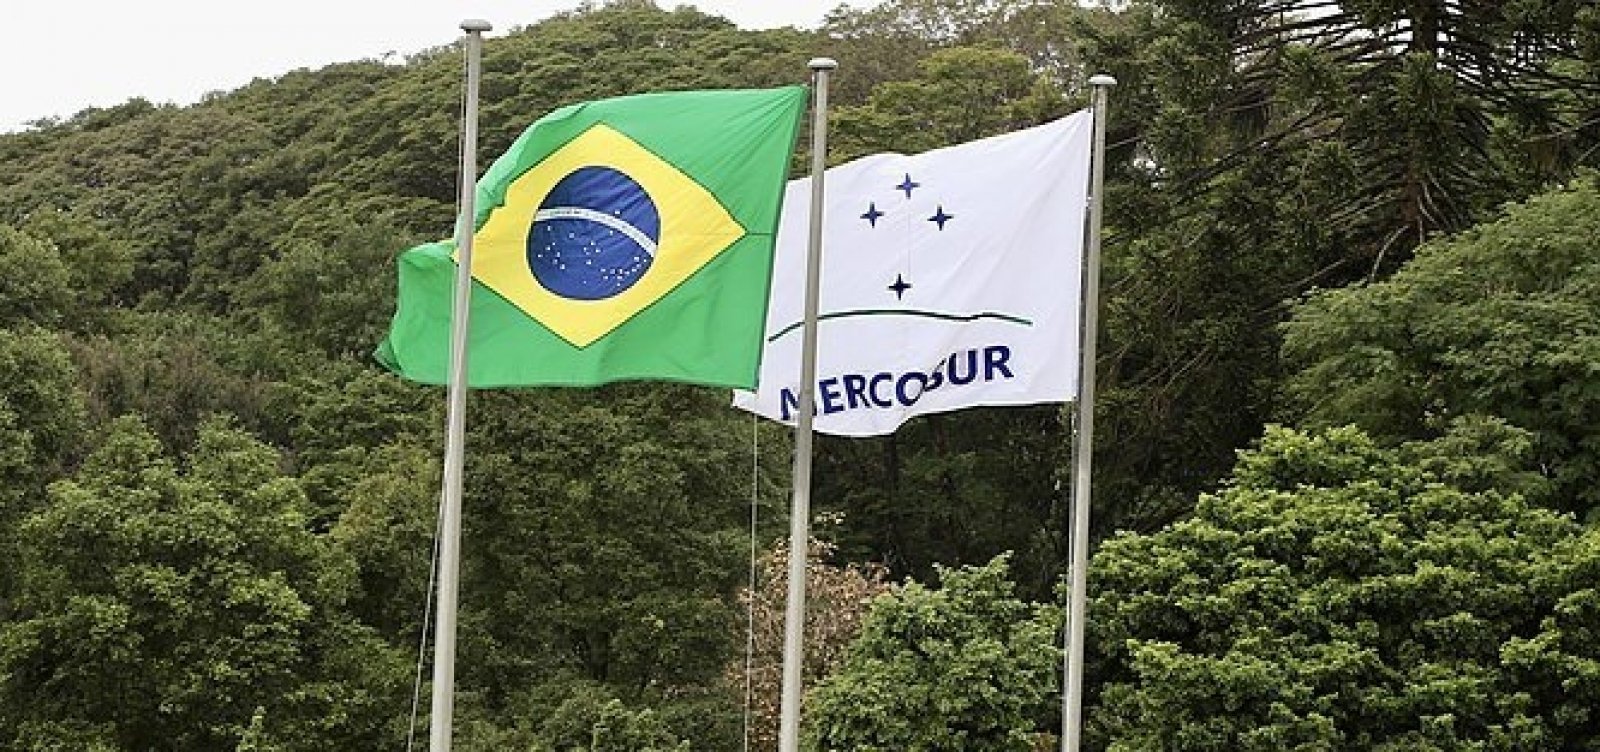 Problemas ambientais podem se 'agravar' se o acordo entre Mercosul e UE não entrar em vigor, diz governo brasileiro